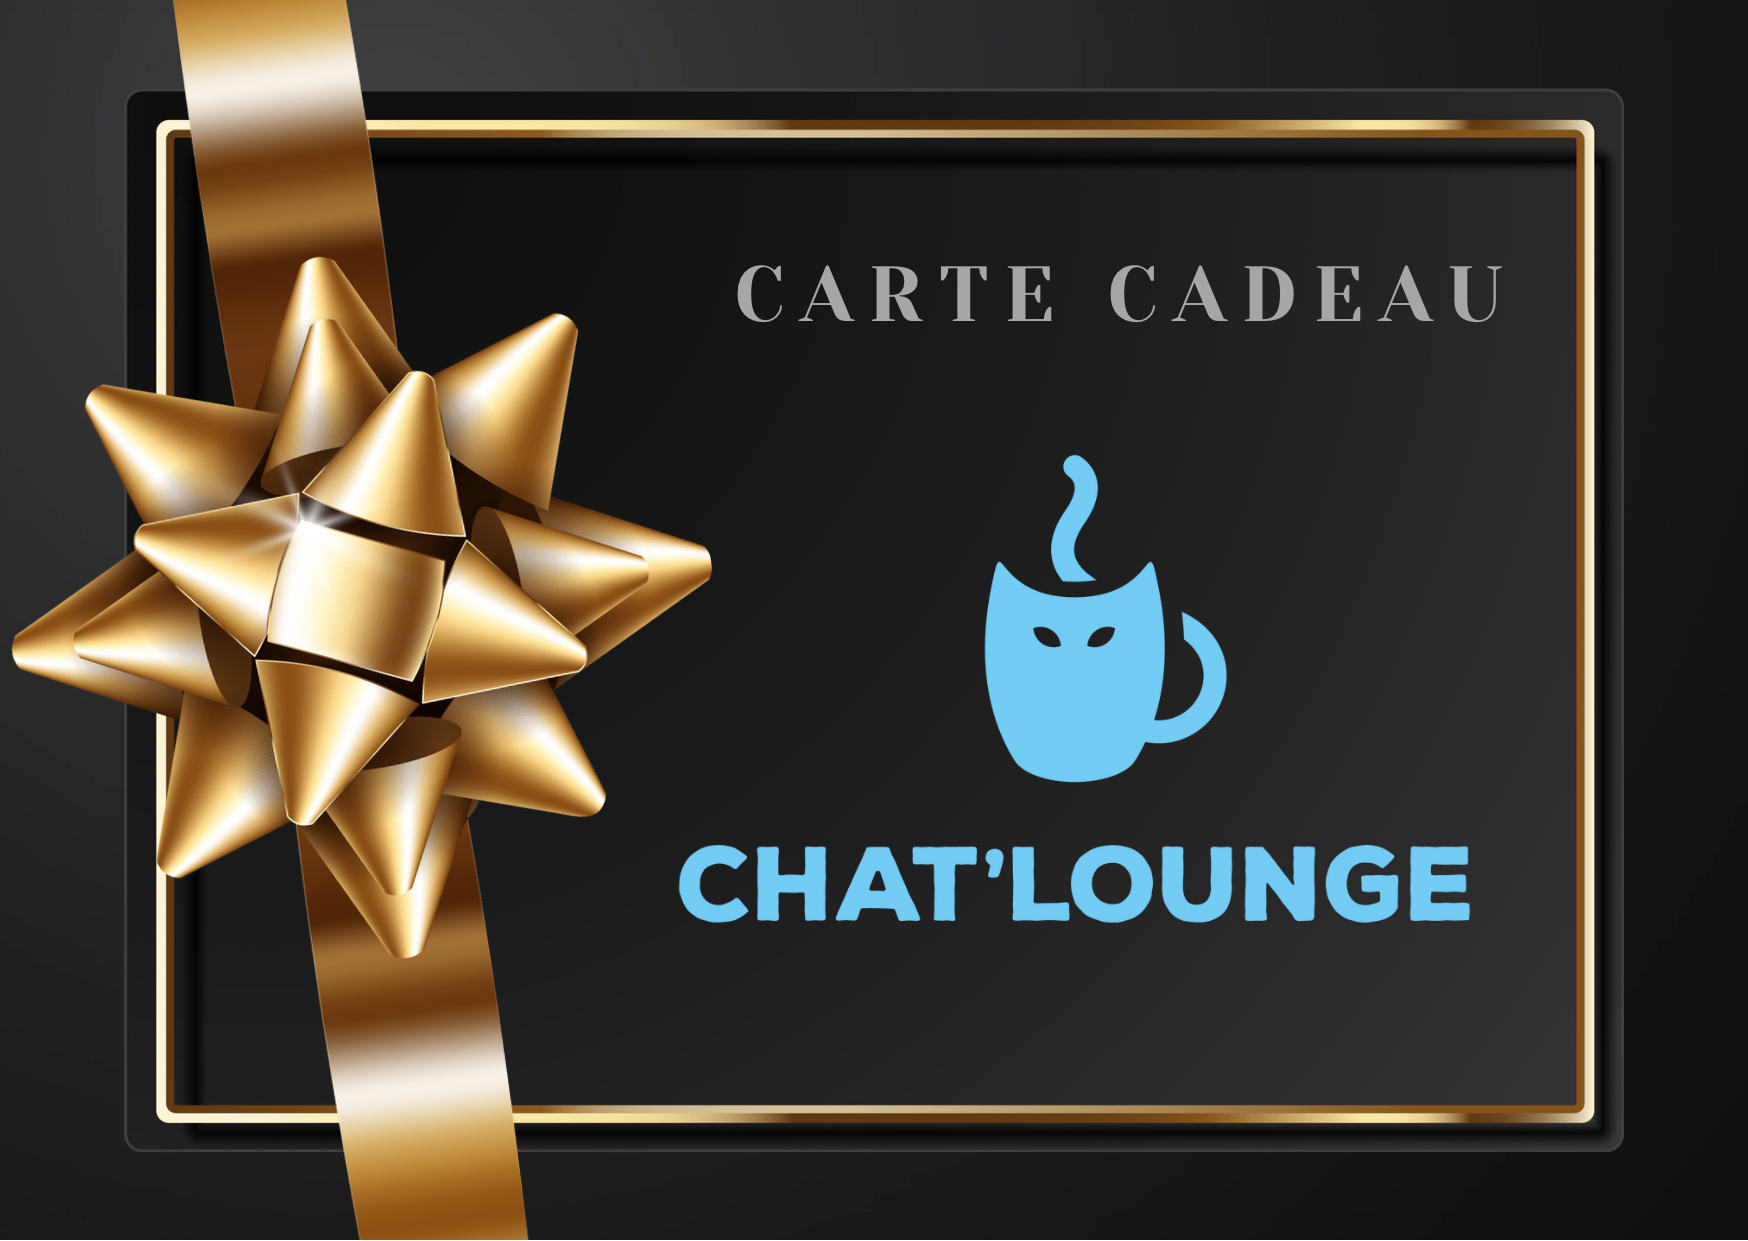 Carte cadeau Chat’lounge